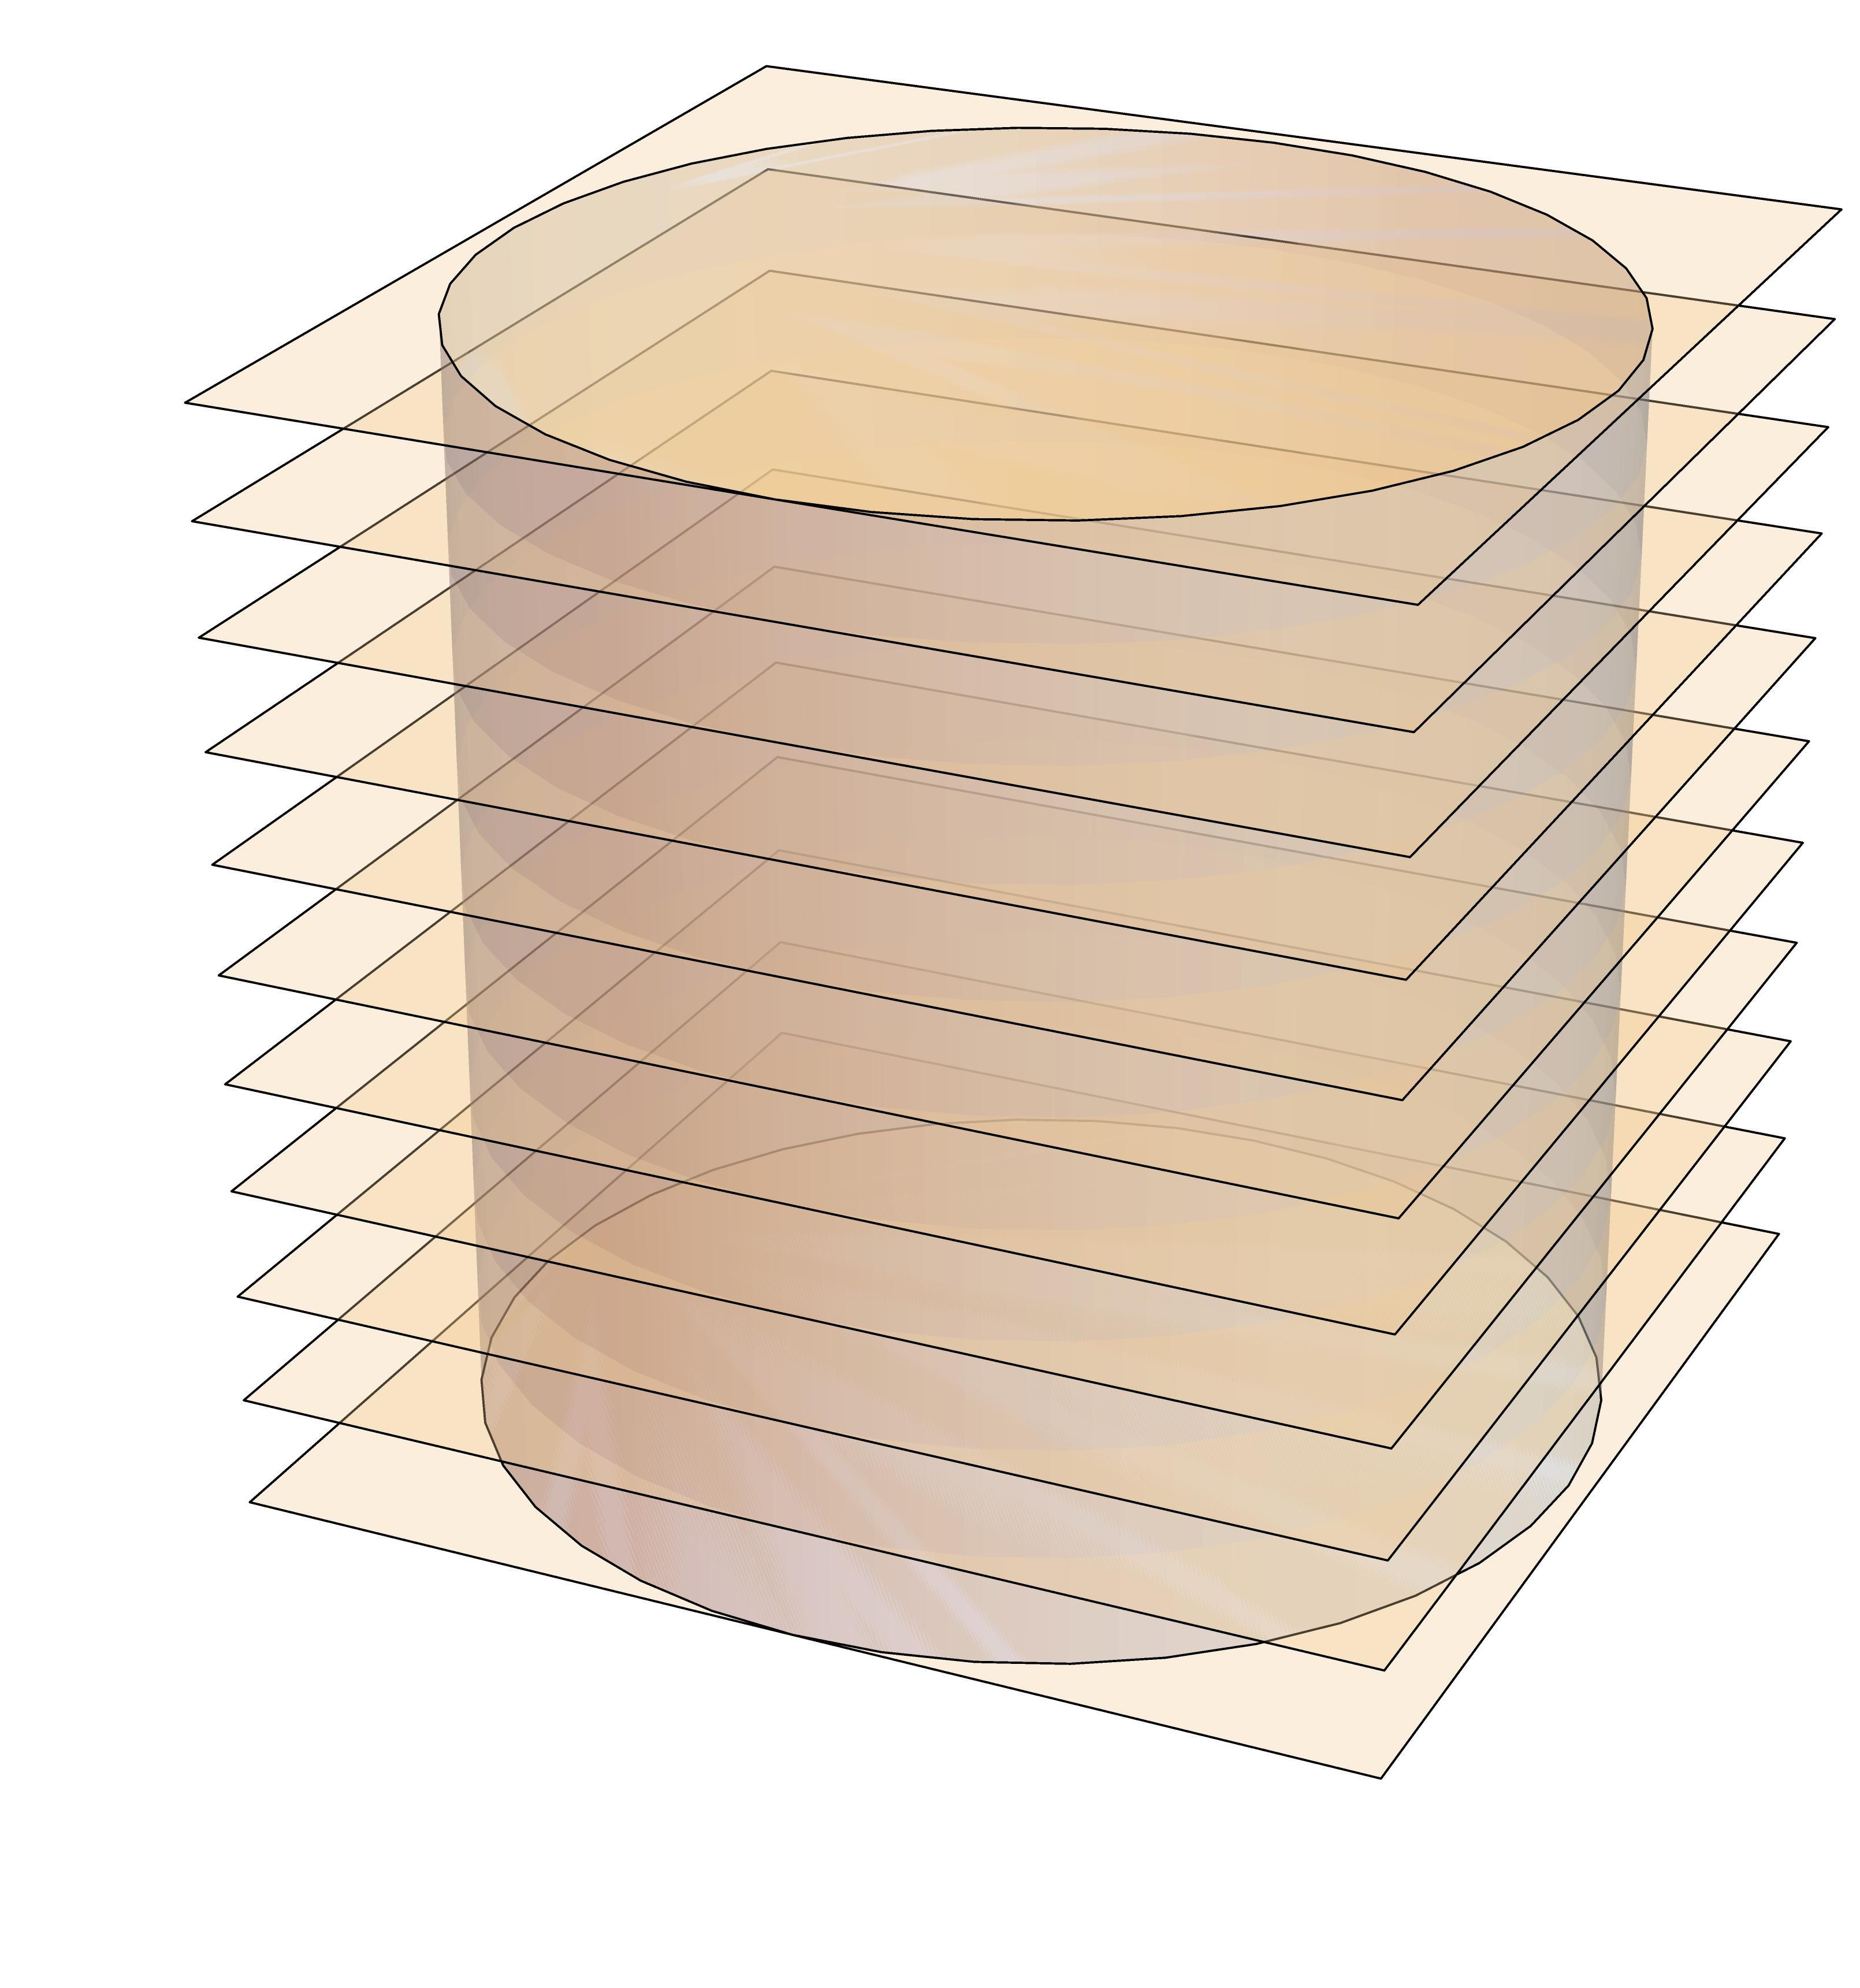 Cylindre coupé en n cylindres partiels par des plans équidistants perpendiculaires  à l'axe